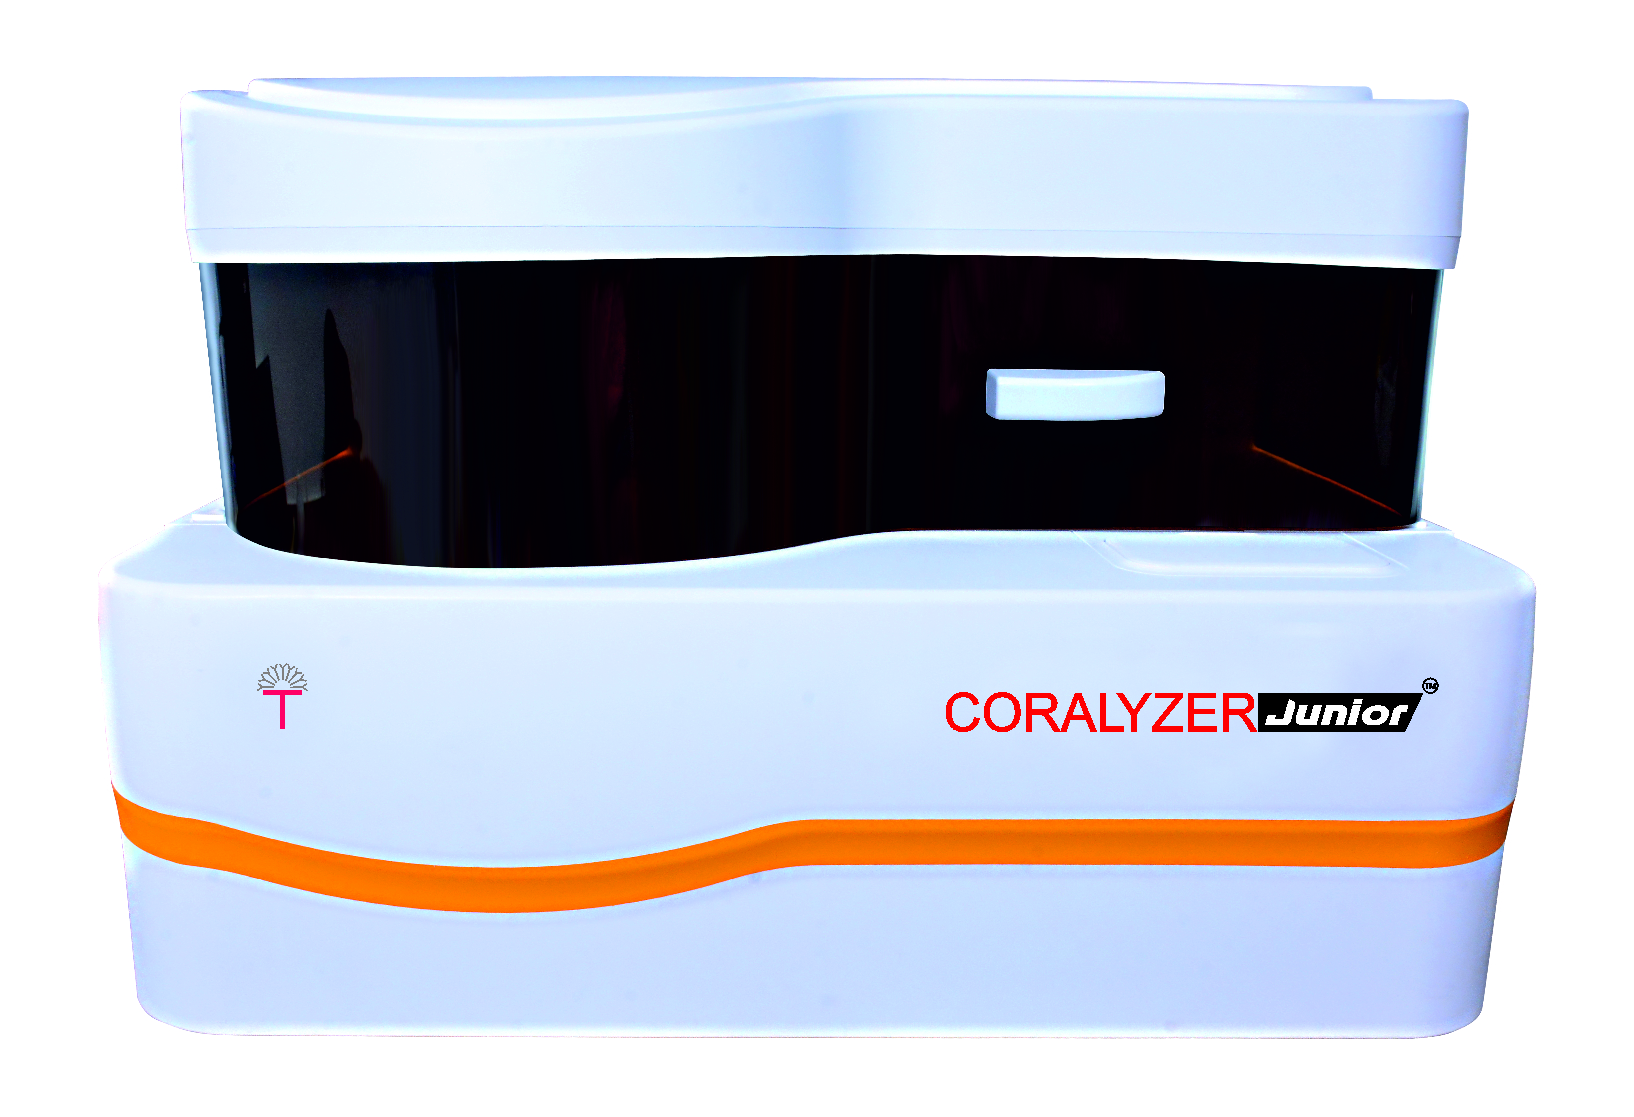 Coralyzer Junior